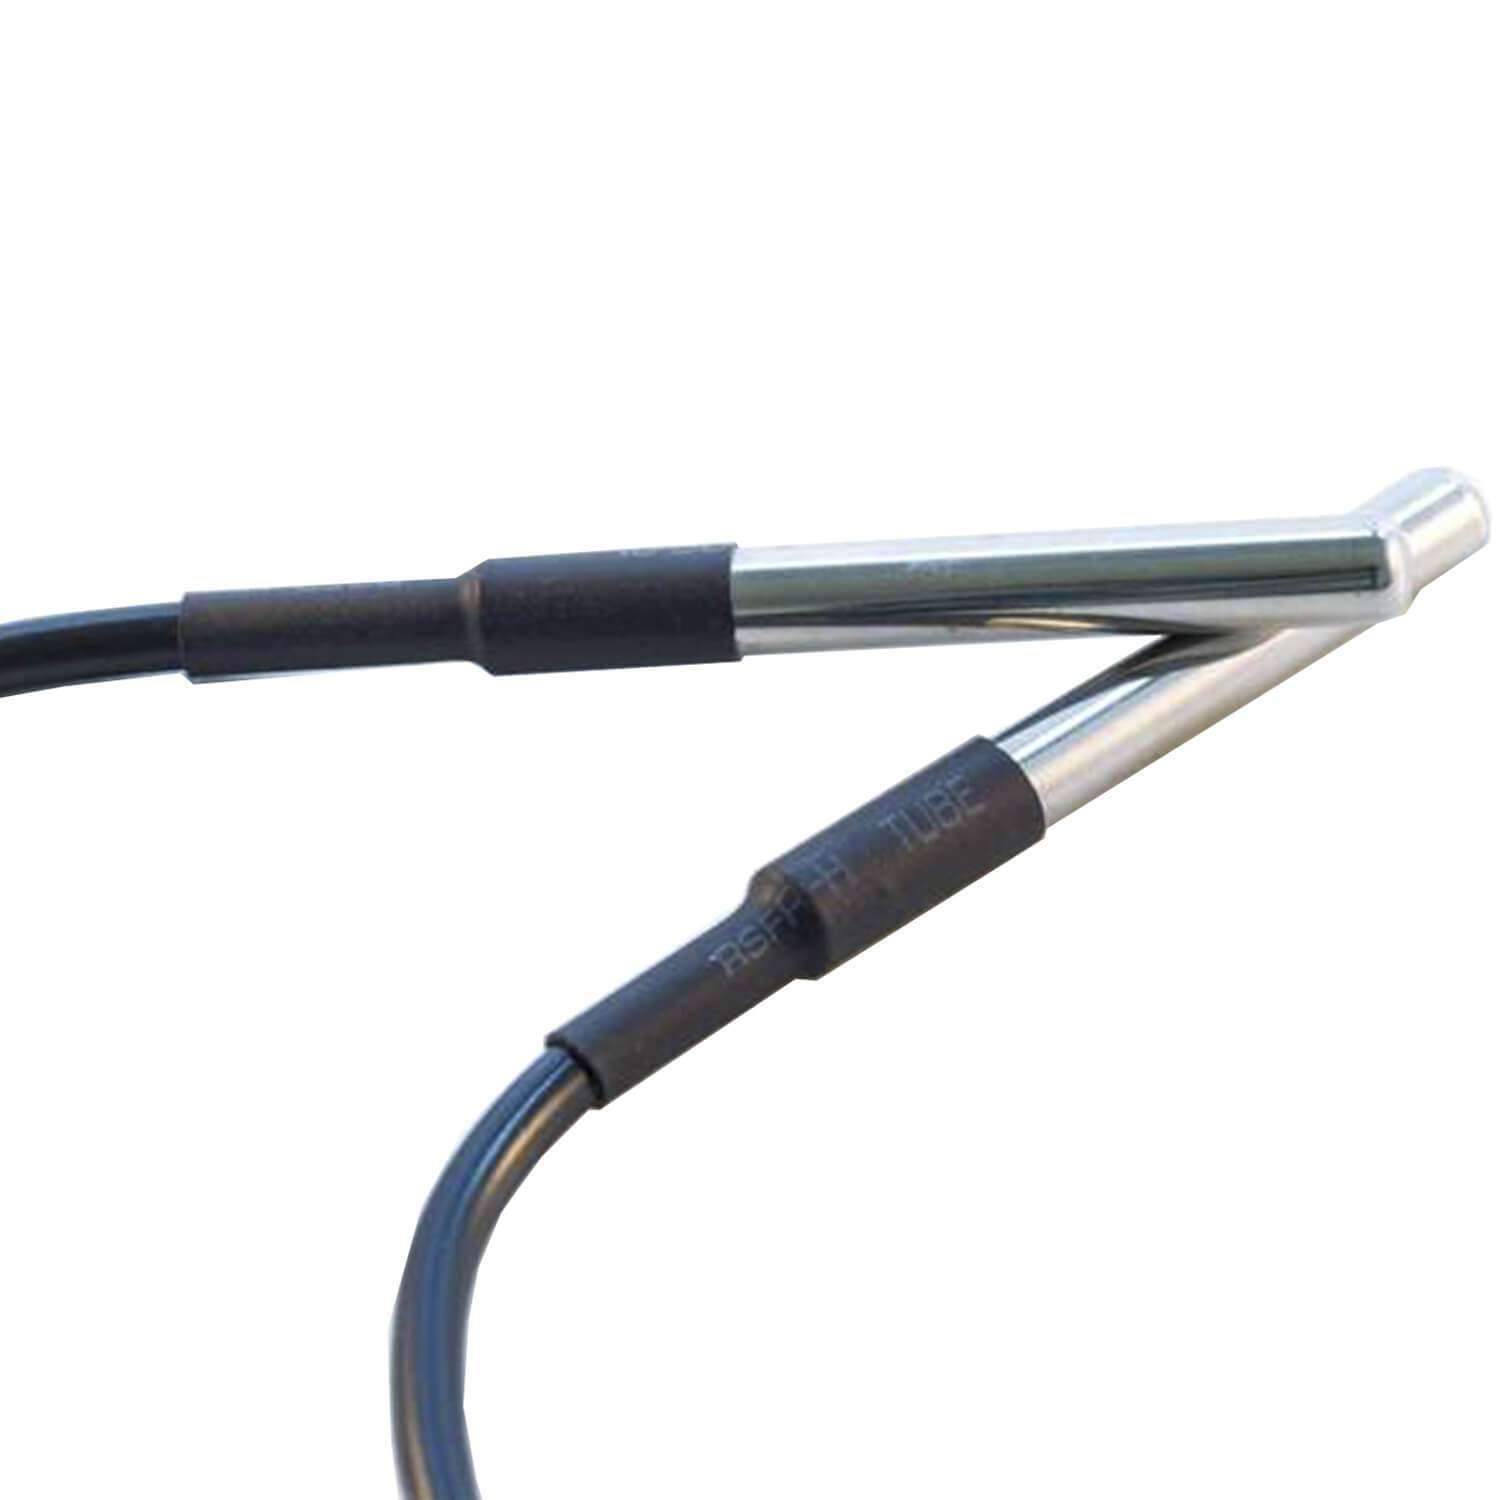 DS18B20 Câble de 1M capteur de température numérique en acier inoxydable  sans gaine thermorétractable, compatible avec Arduino et Raspberry Pi